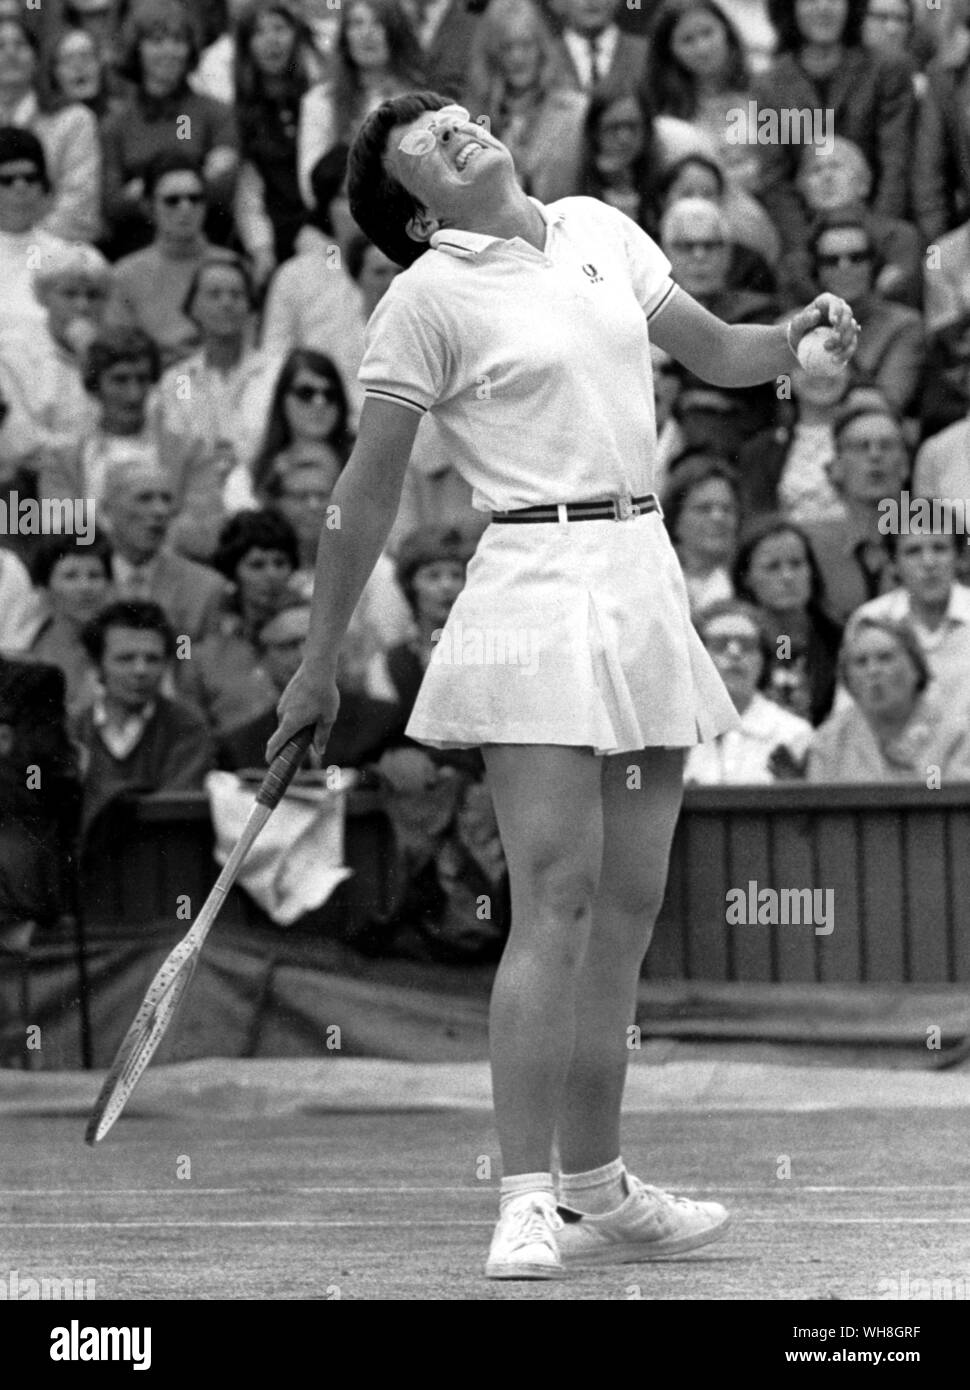 Billie Jean King. Un pase que duelen. Durante su carrera, ganó 12 títulos individuales de Grand Slam, 14 Grand Slam títulos en dobles femeninos y 11 Grand Slam títulos en dobles mixtos. Ella es generalmente considerado como uno de los más grandes jugadores de tenis y atletas en la historia. La enciclopedia de tenis página 162. Foto de stock